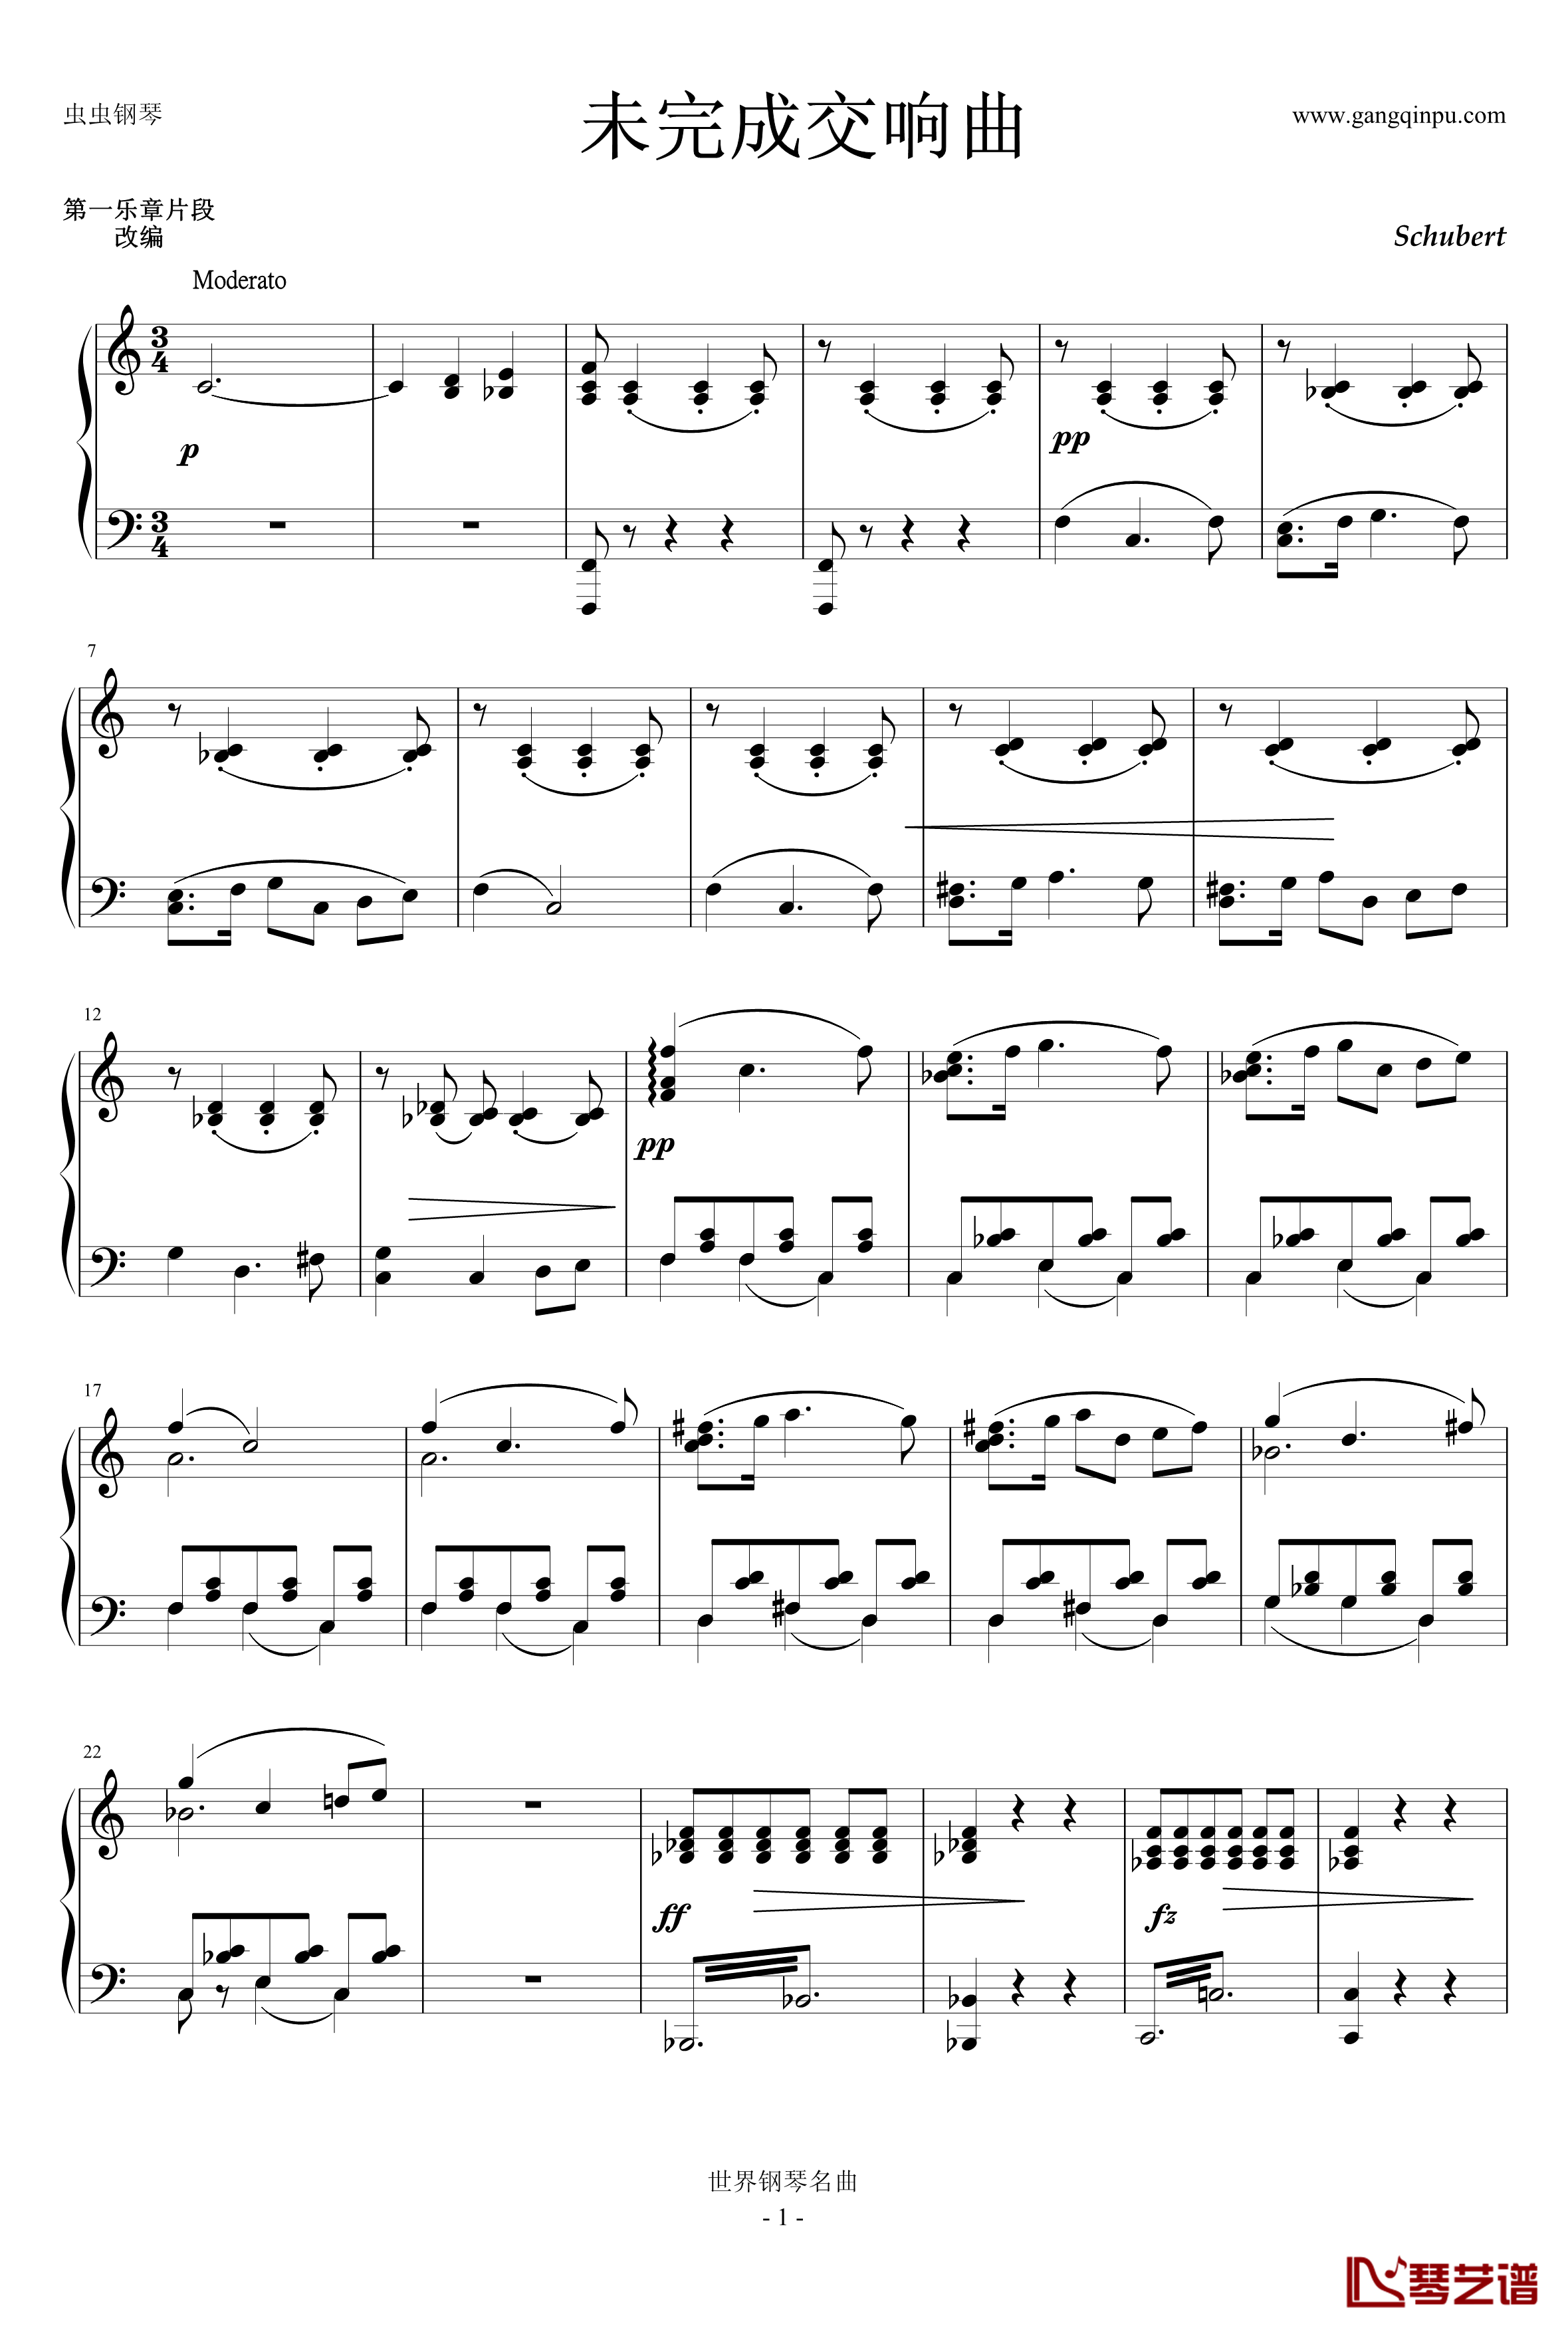 未完成交响曲钢琴谱-舒伯特-第一乐章选段1